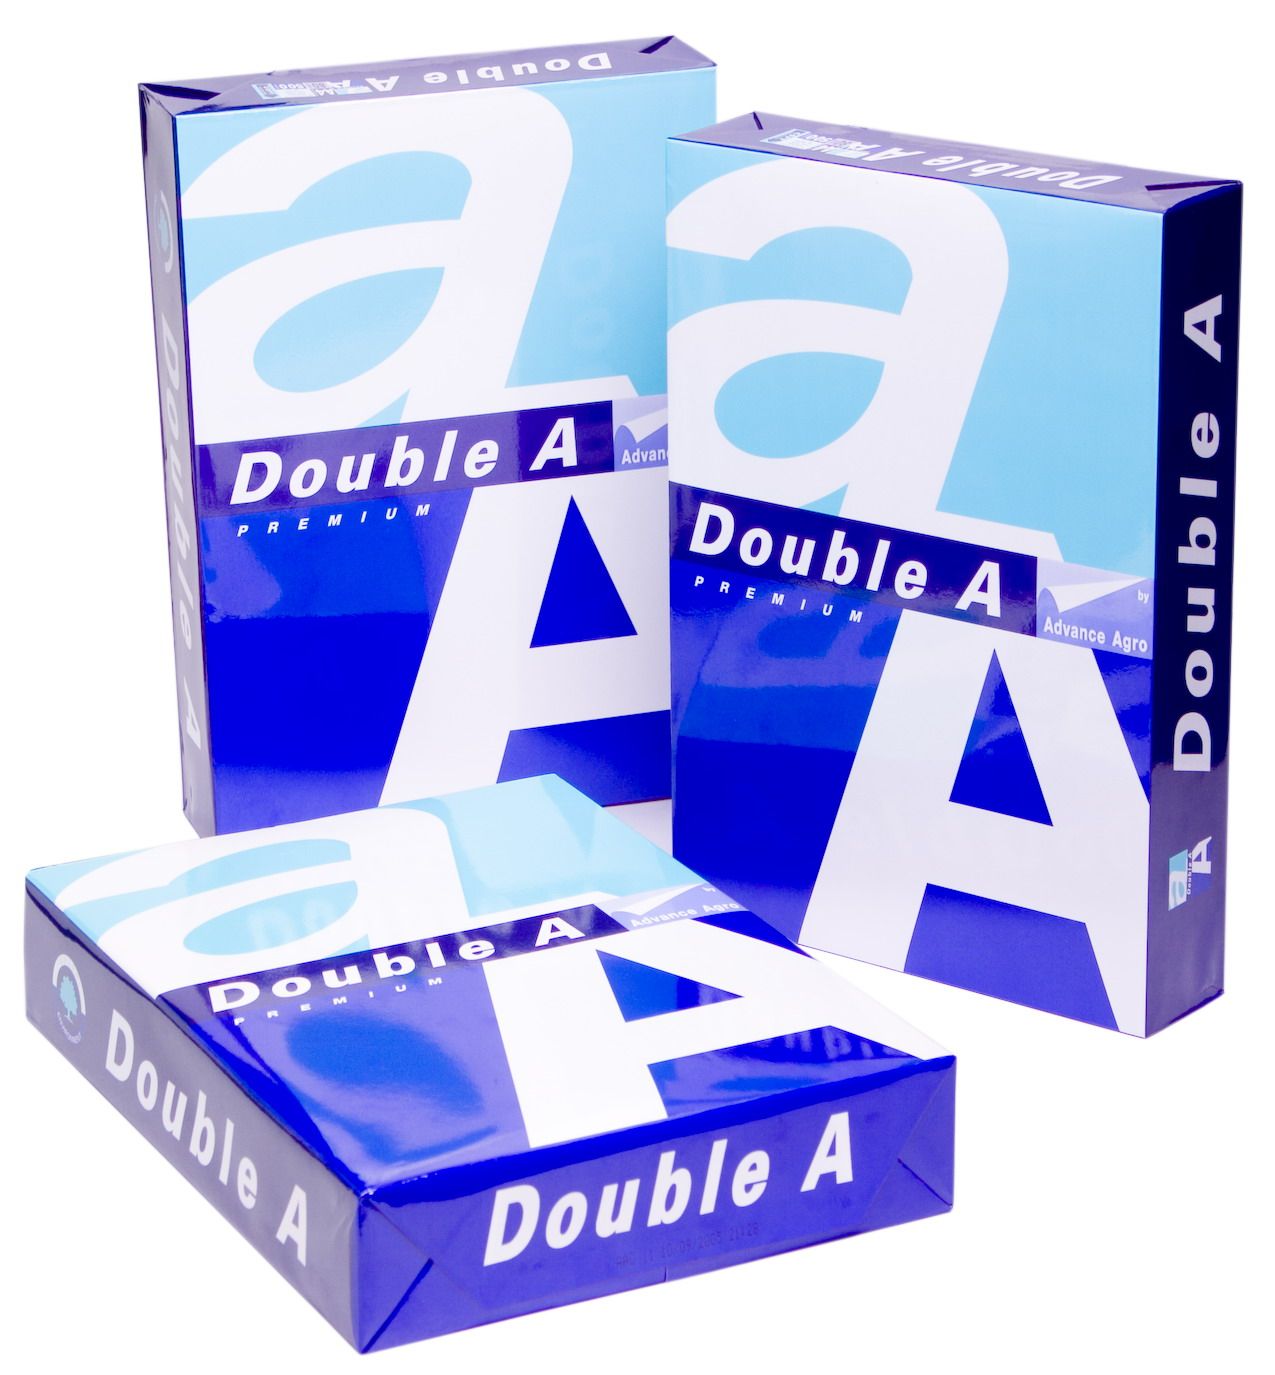  Do Double A A4 Copy Paper 80gsm/75gsm/70gsmuble A A4 Copy Paper 80gsm/75gsm/70gsm